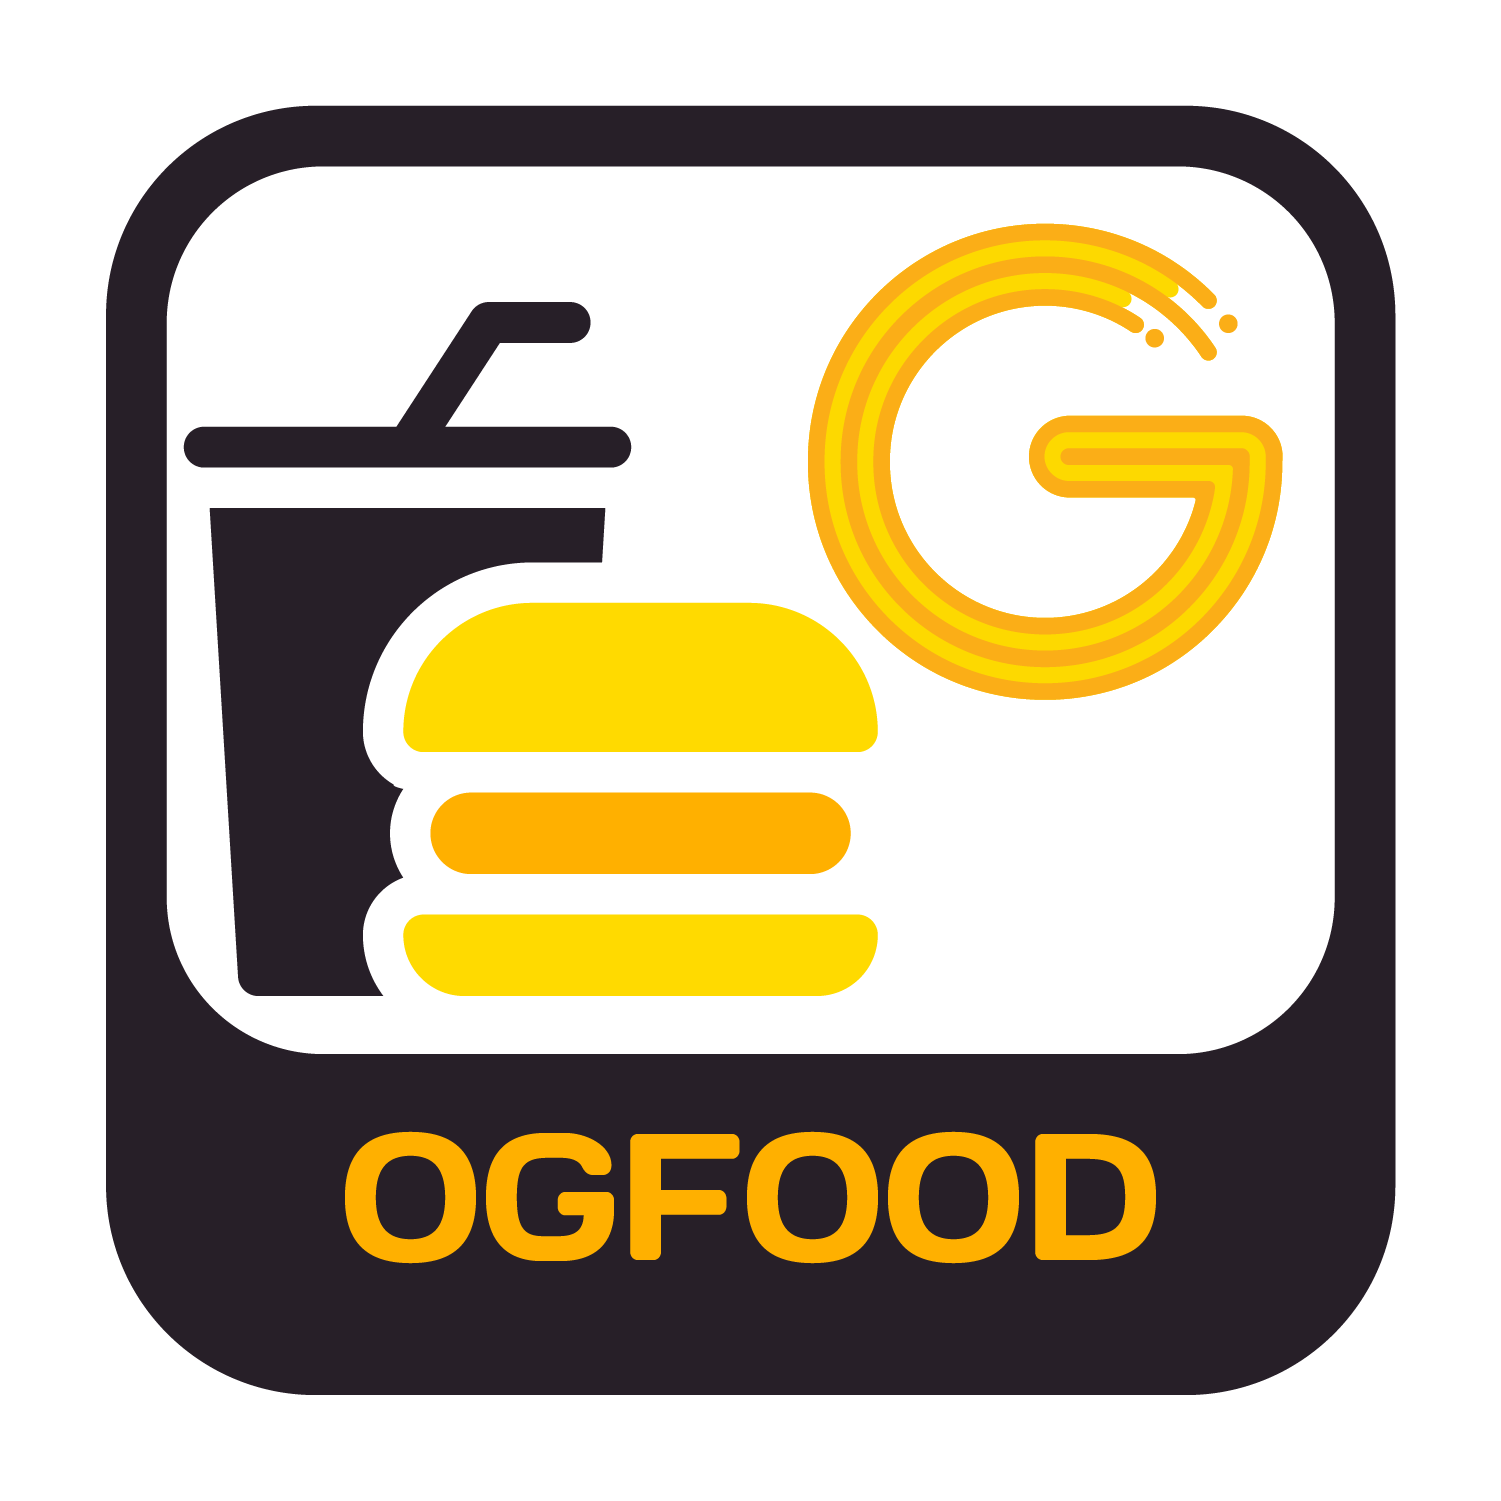 OGFood | OlaGate Food